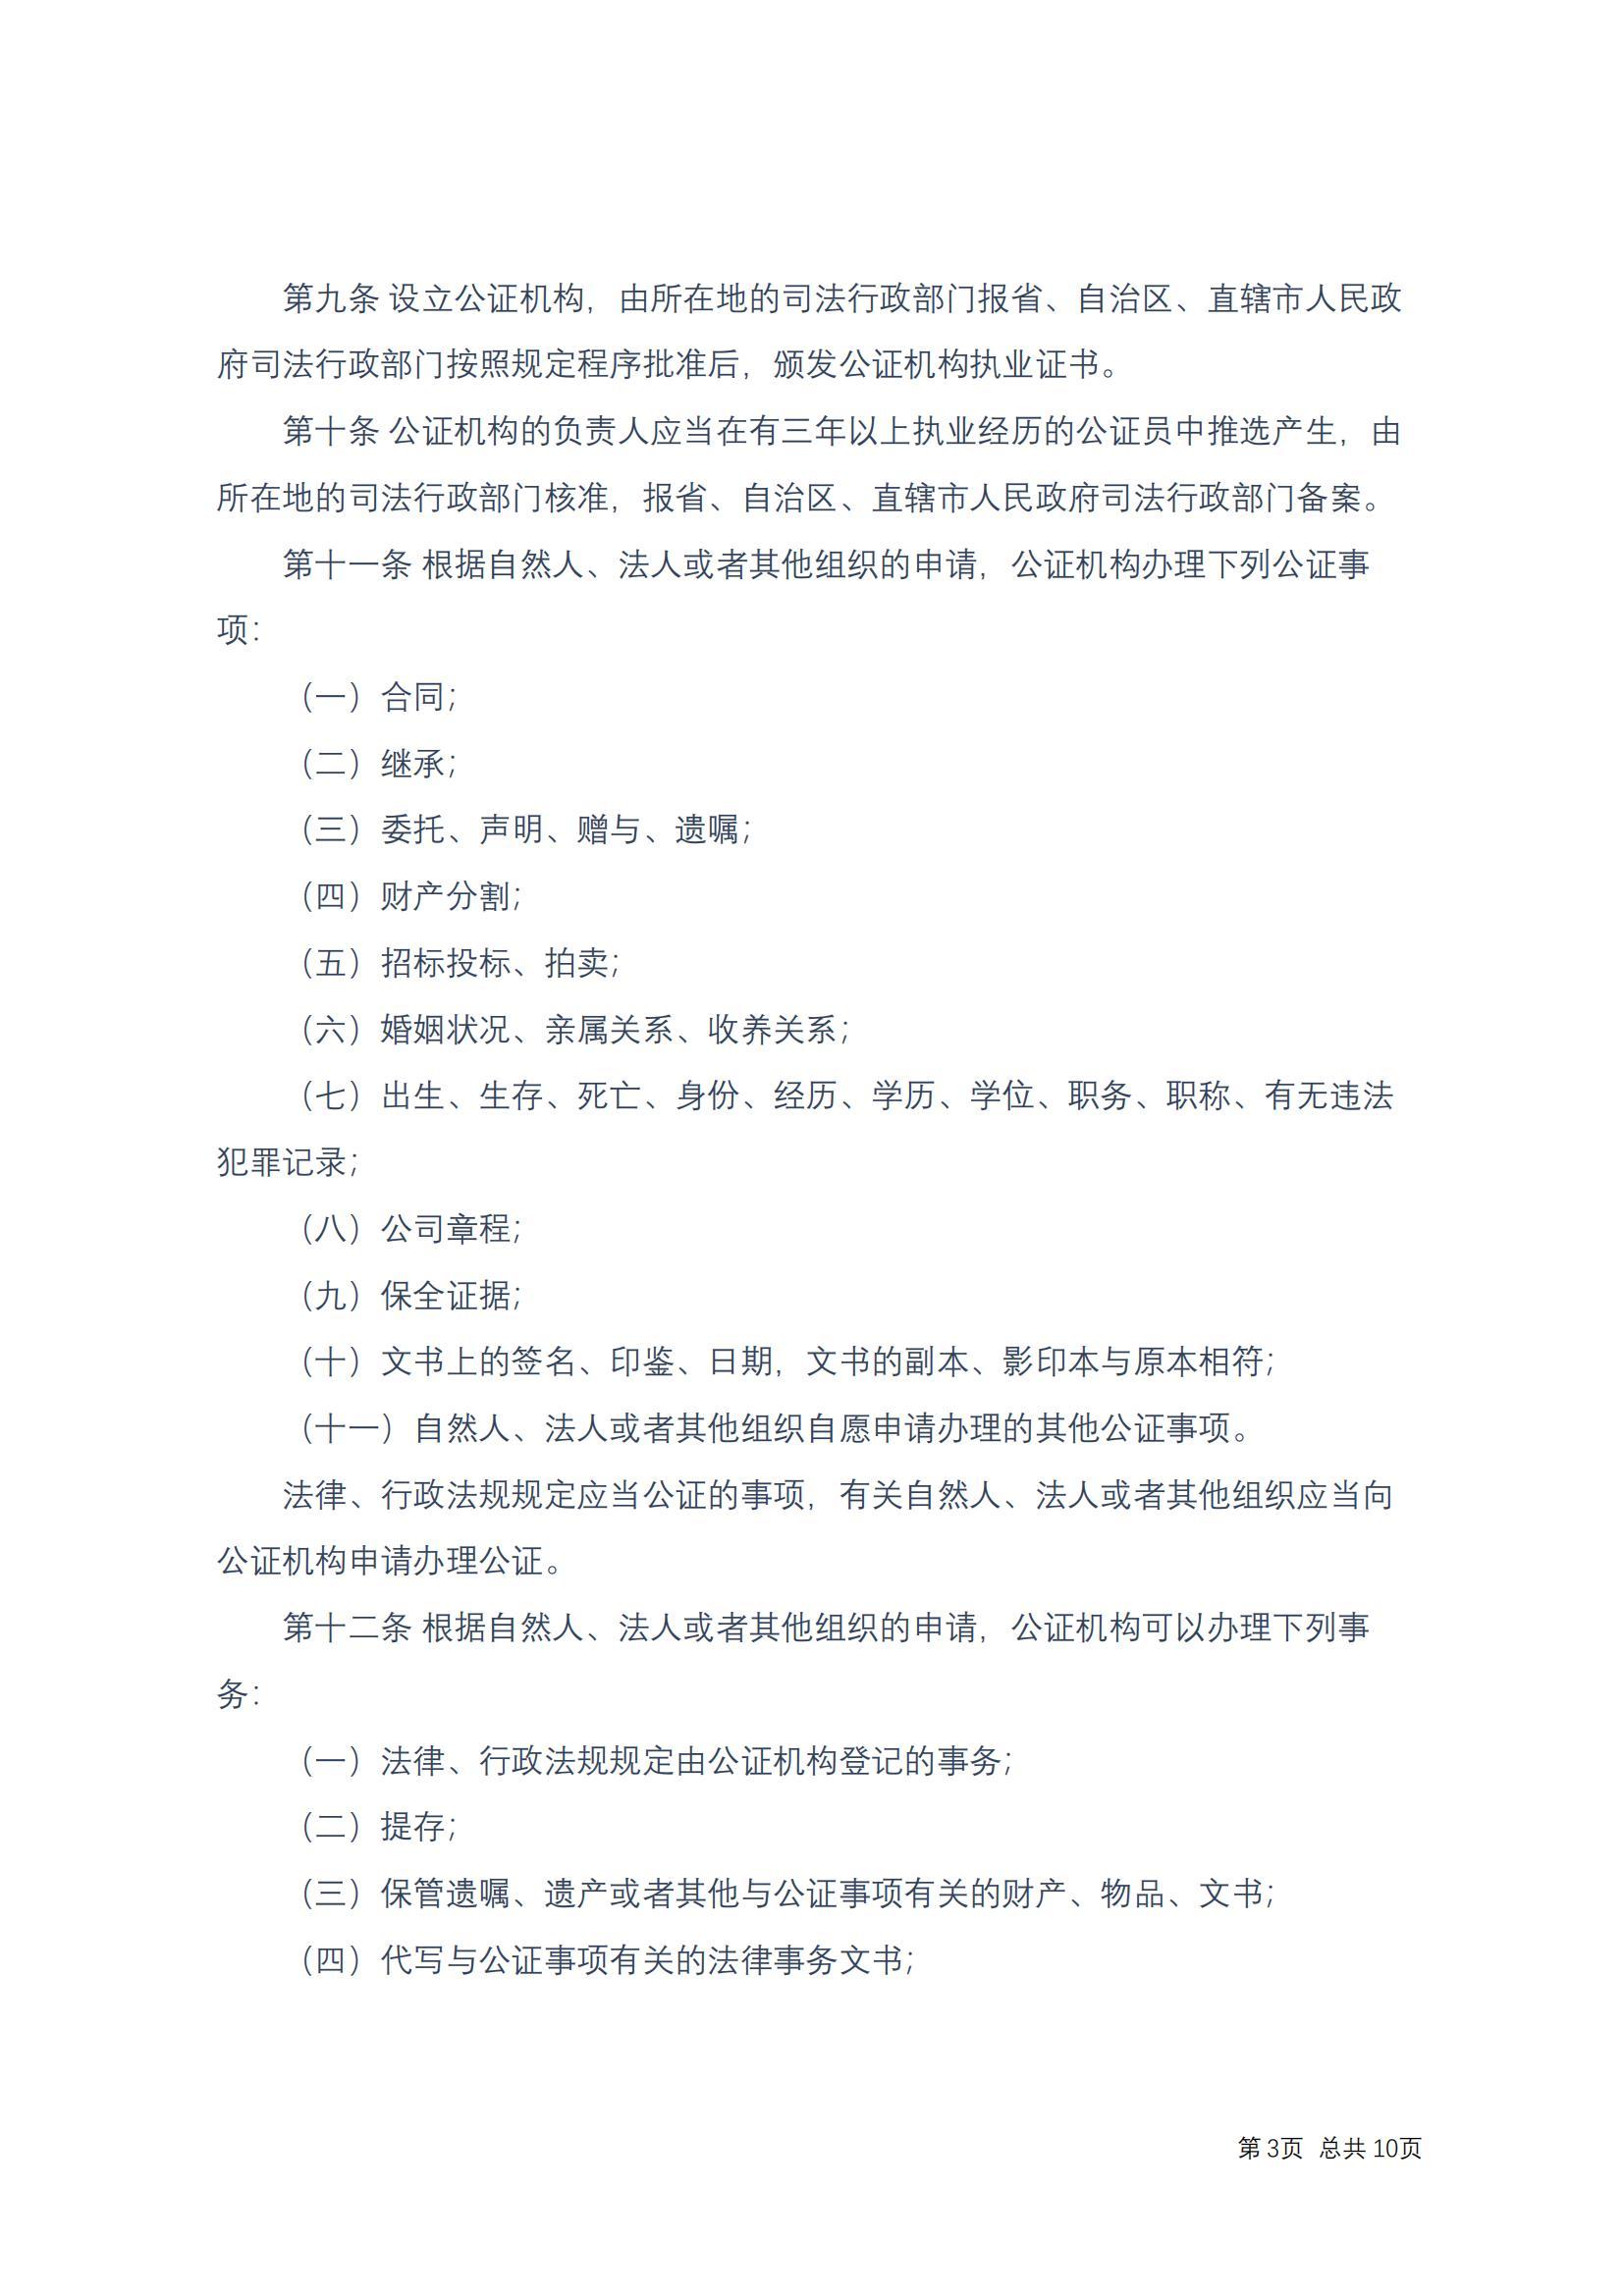 中华人民共和国公证法(2017修正)修改过_02